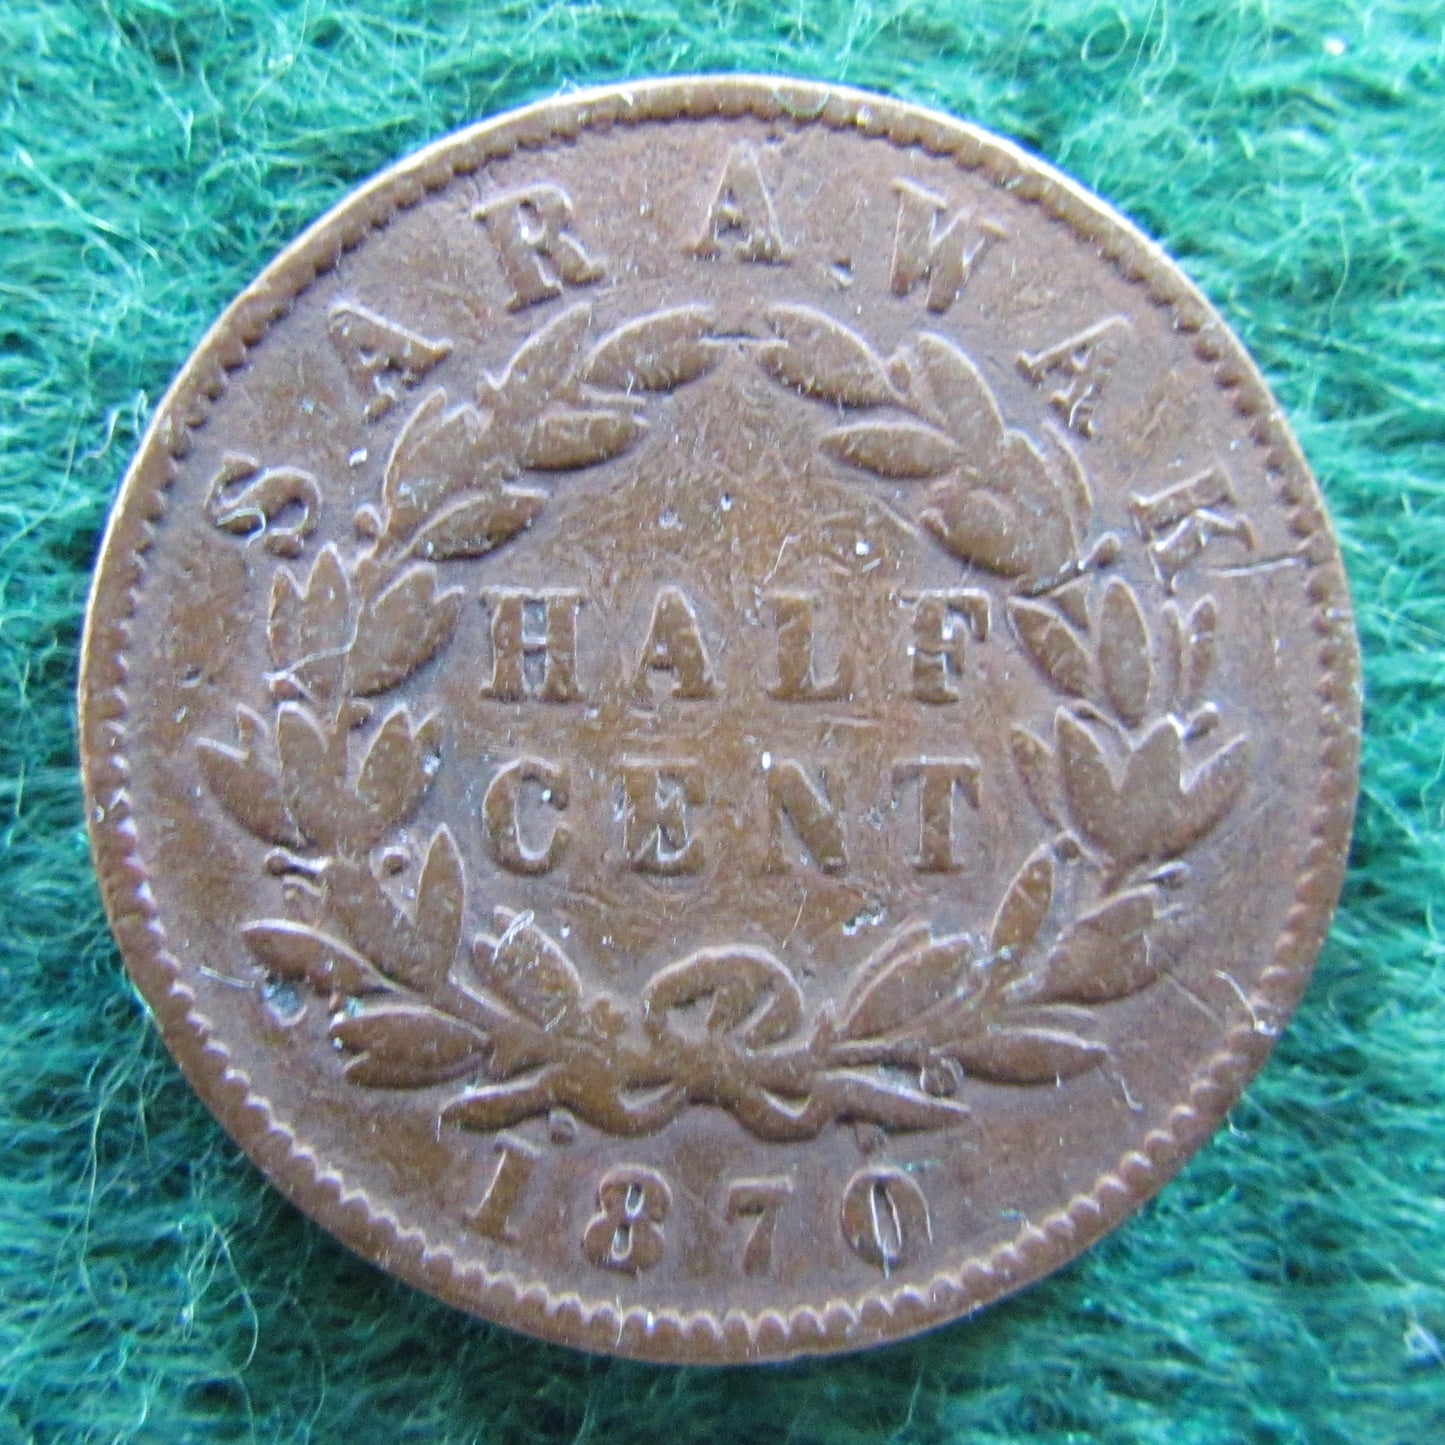 Sarawak 1870 Half Cent Coin C B Brooke Rajah